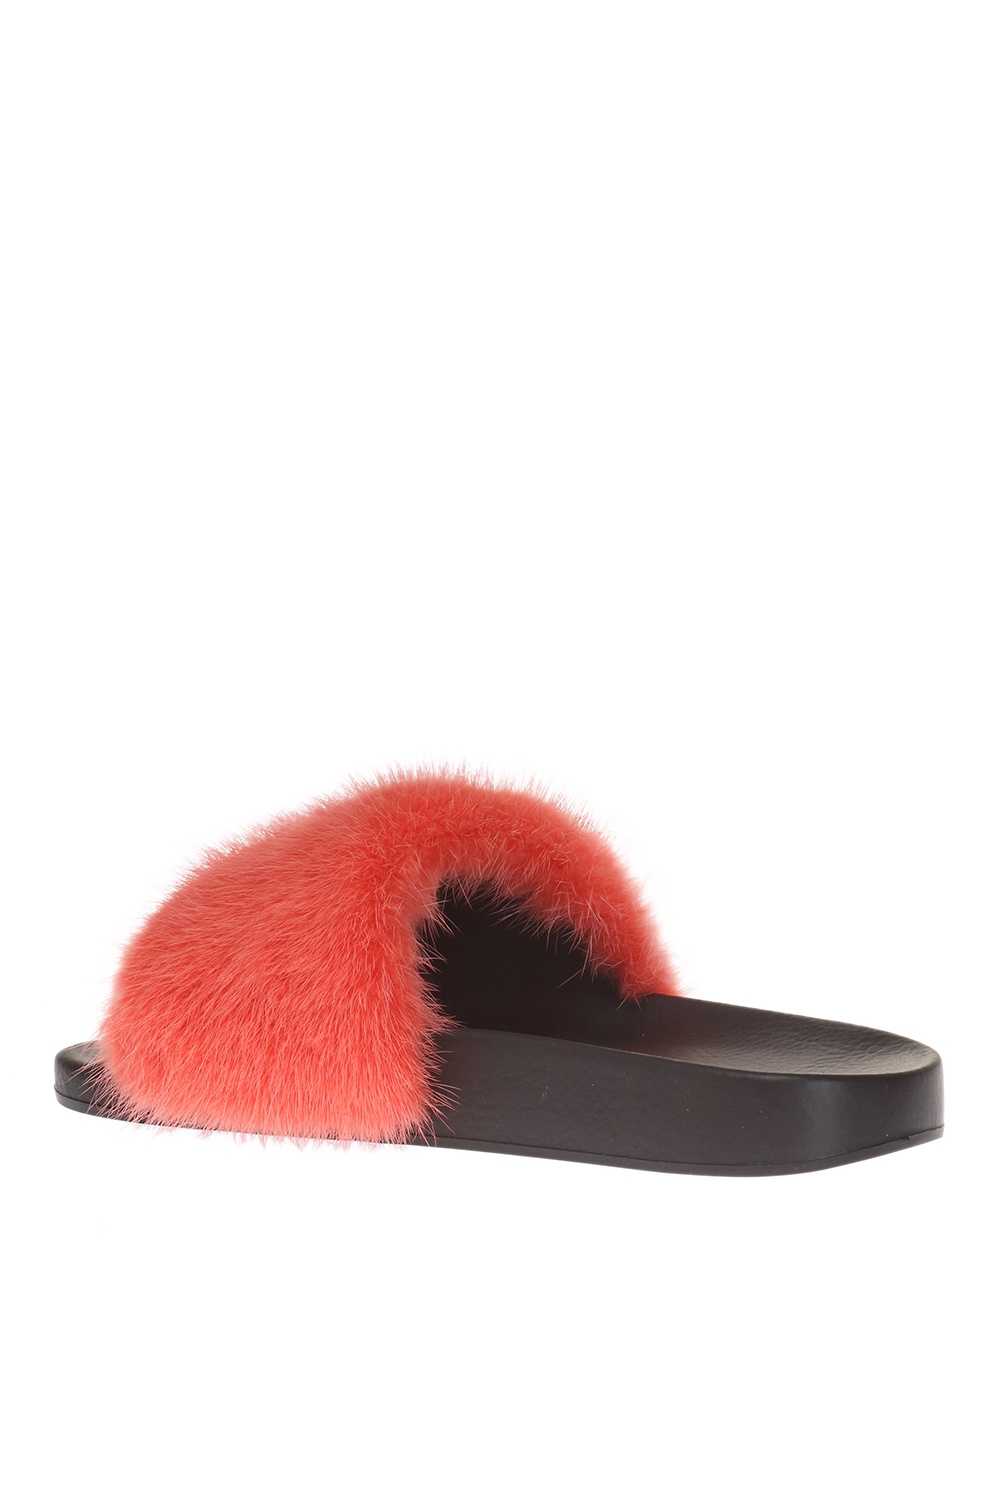 Mink fur slippers Givenchy - Vitkac HK